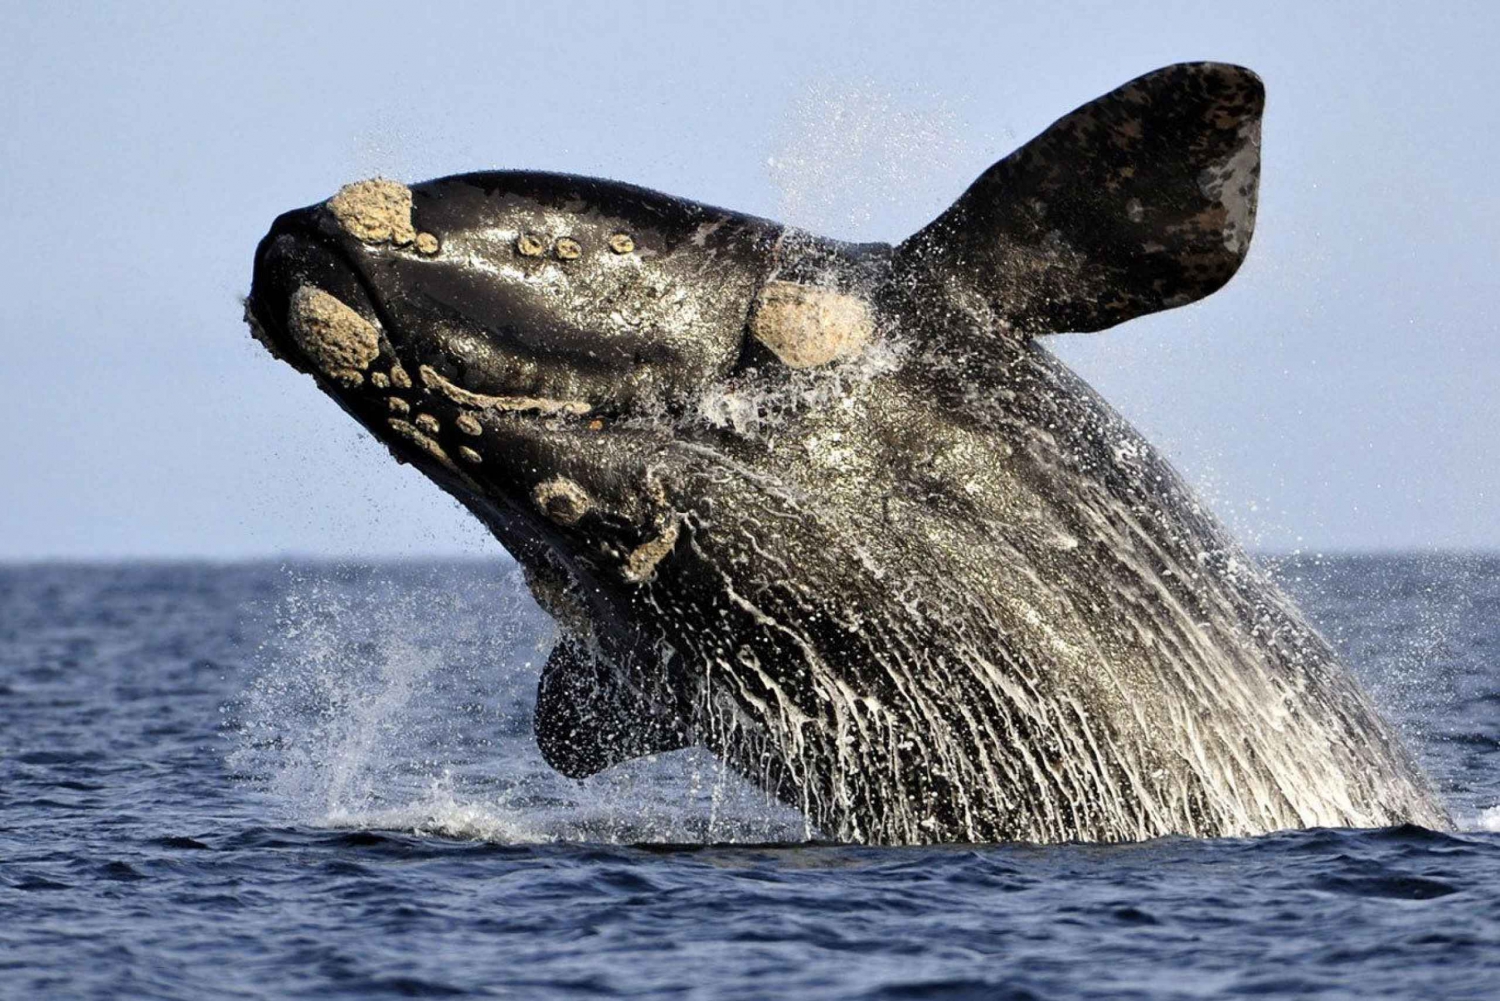 Depuis Le Cap : observation des baleines à Hermanus